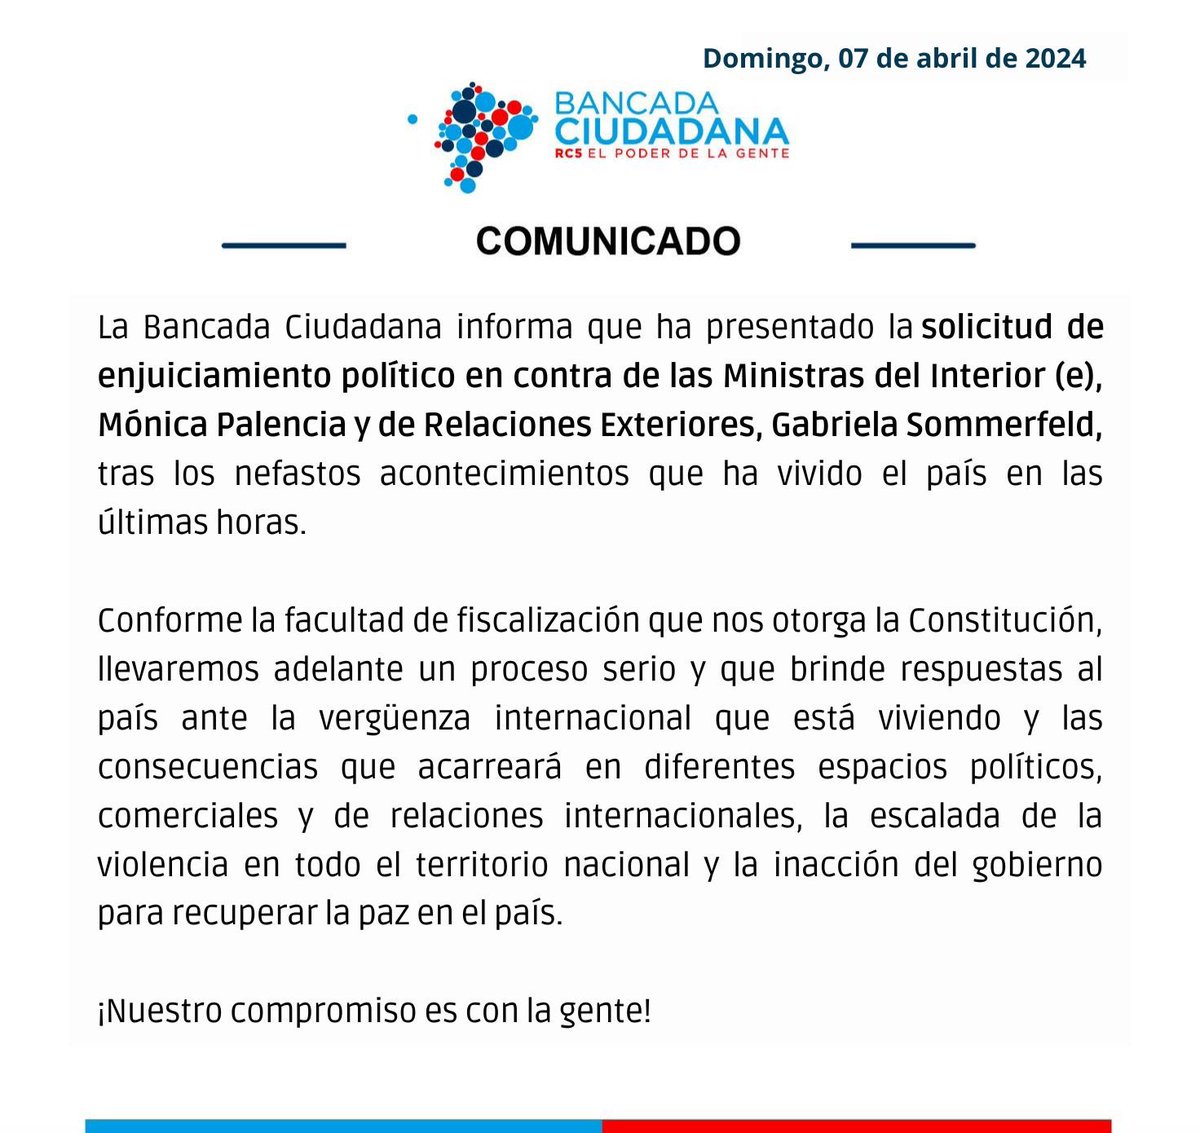 🔴 COMUNICADO 🔴

#FiscalizaciónBancadaCiudadana